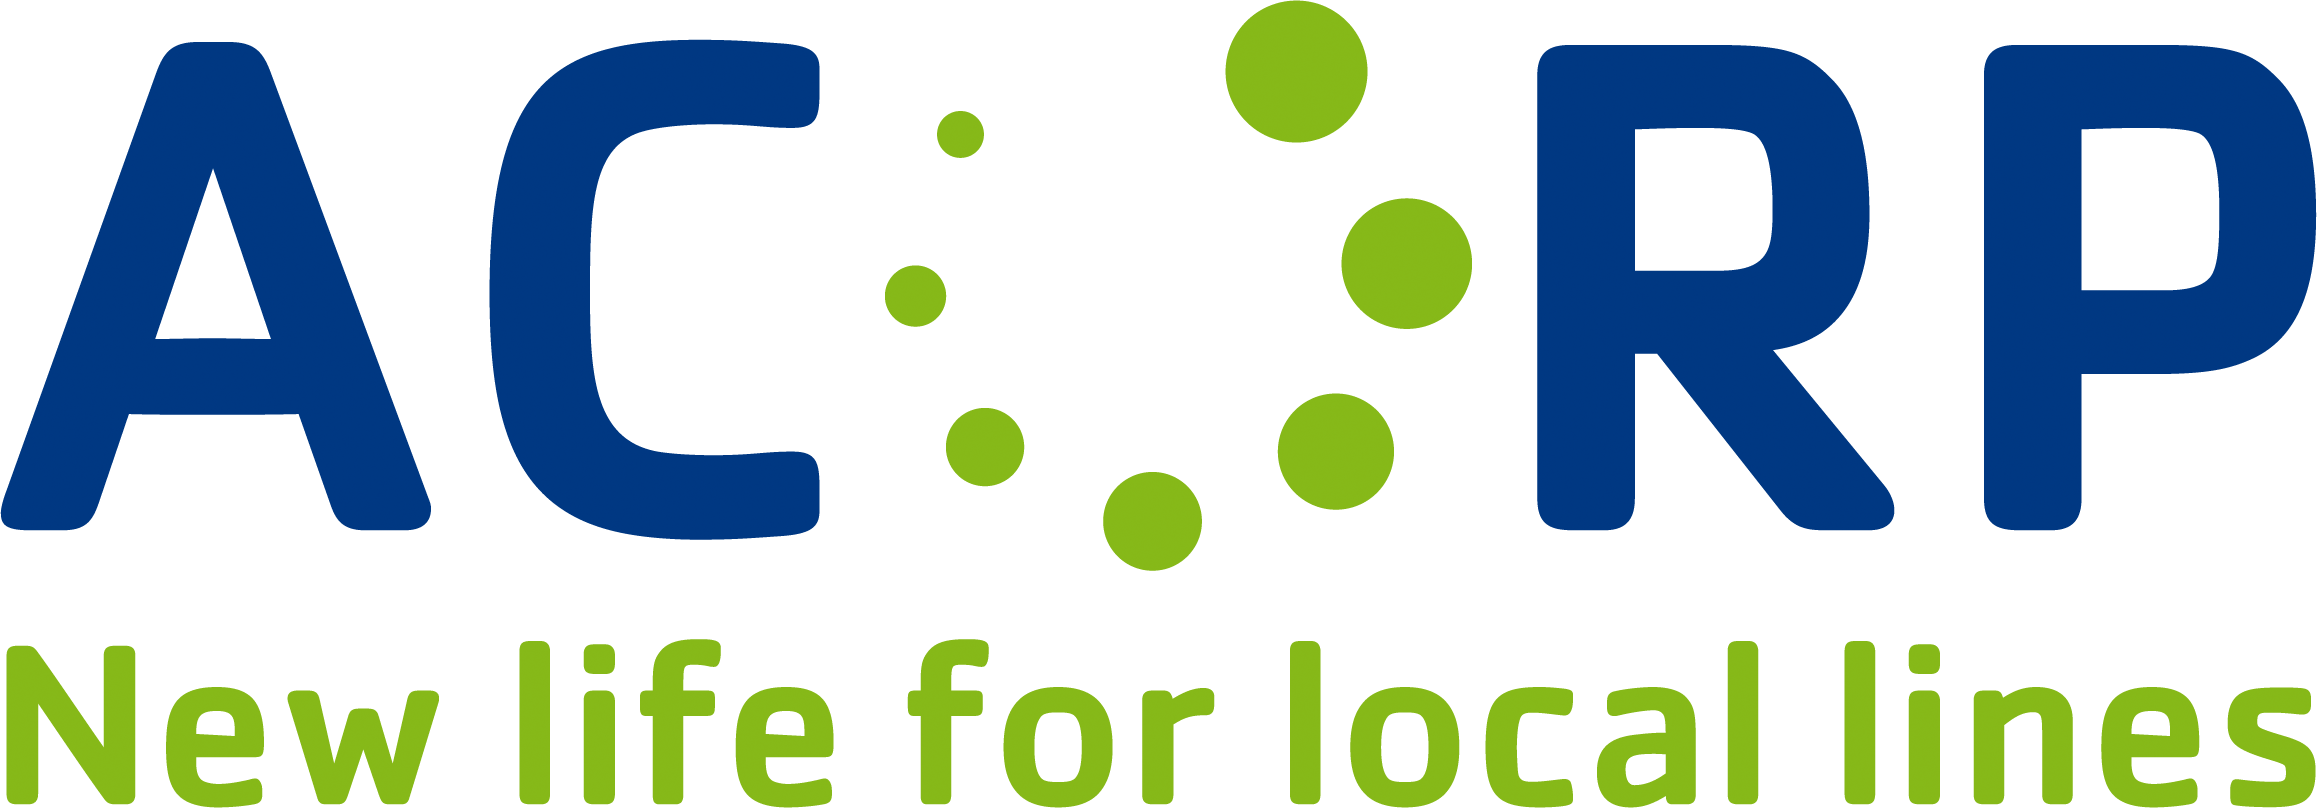 Acorp logo